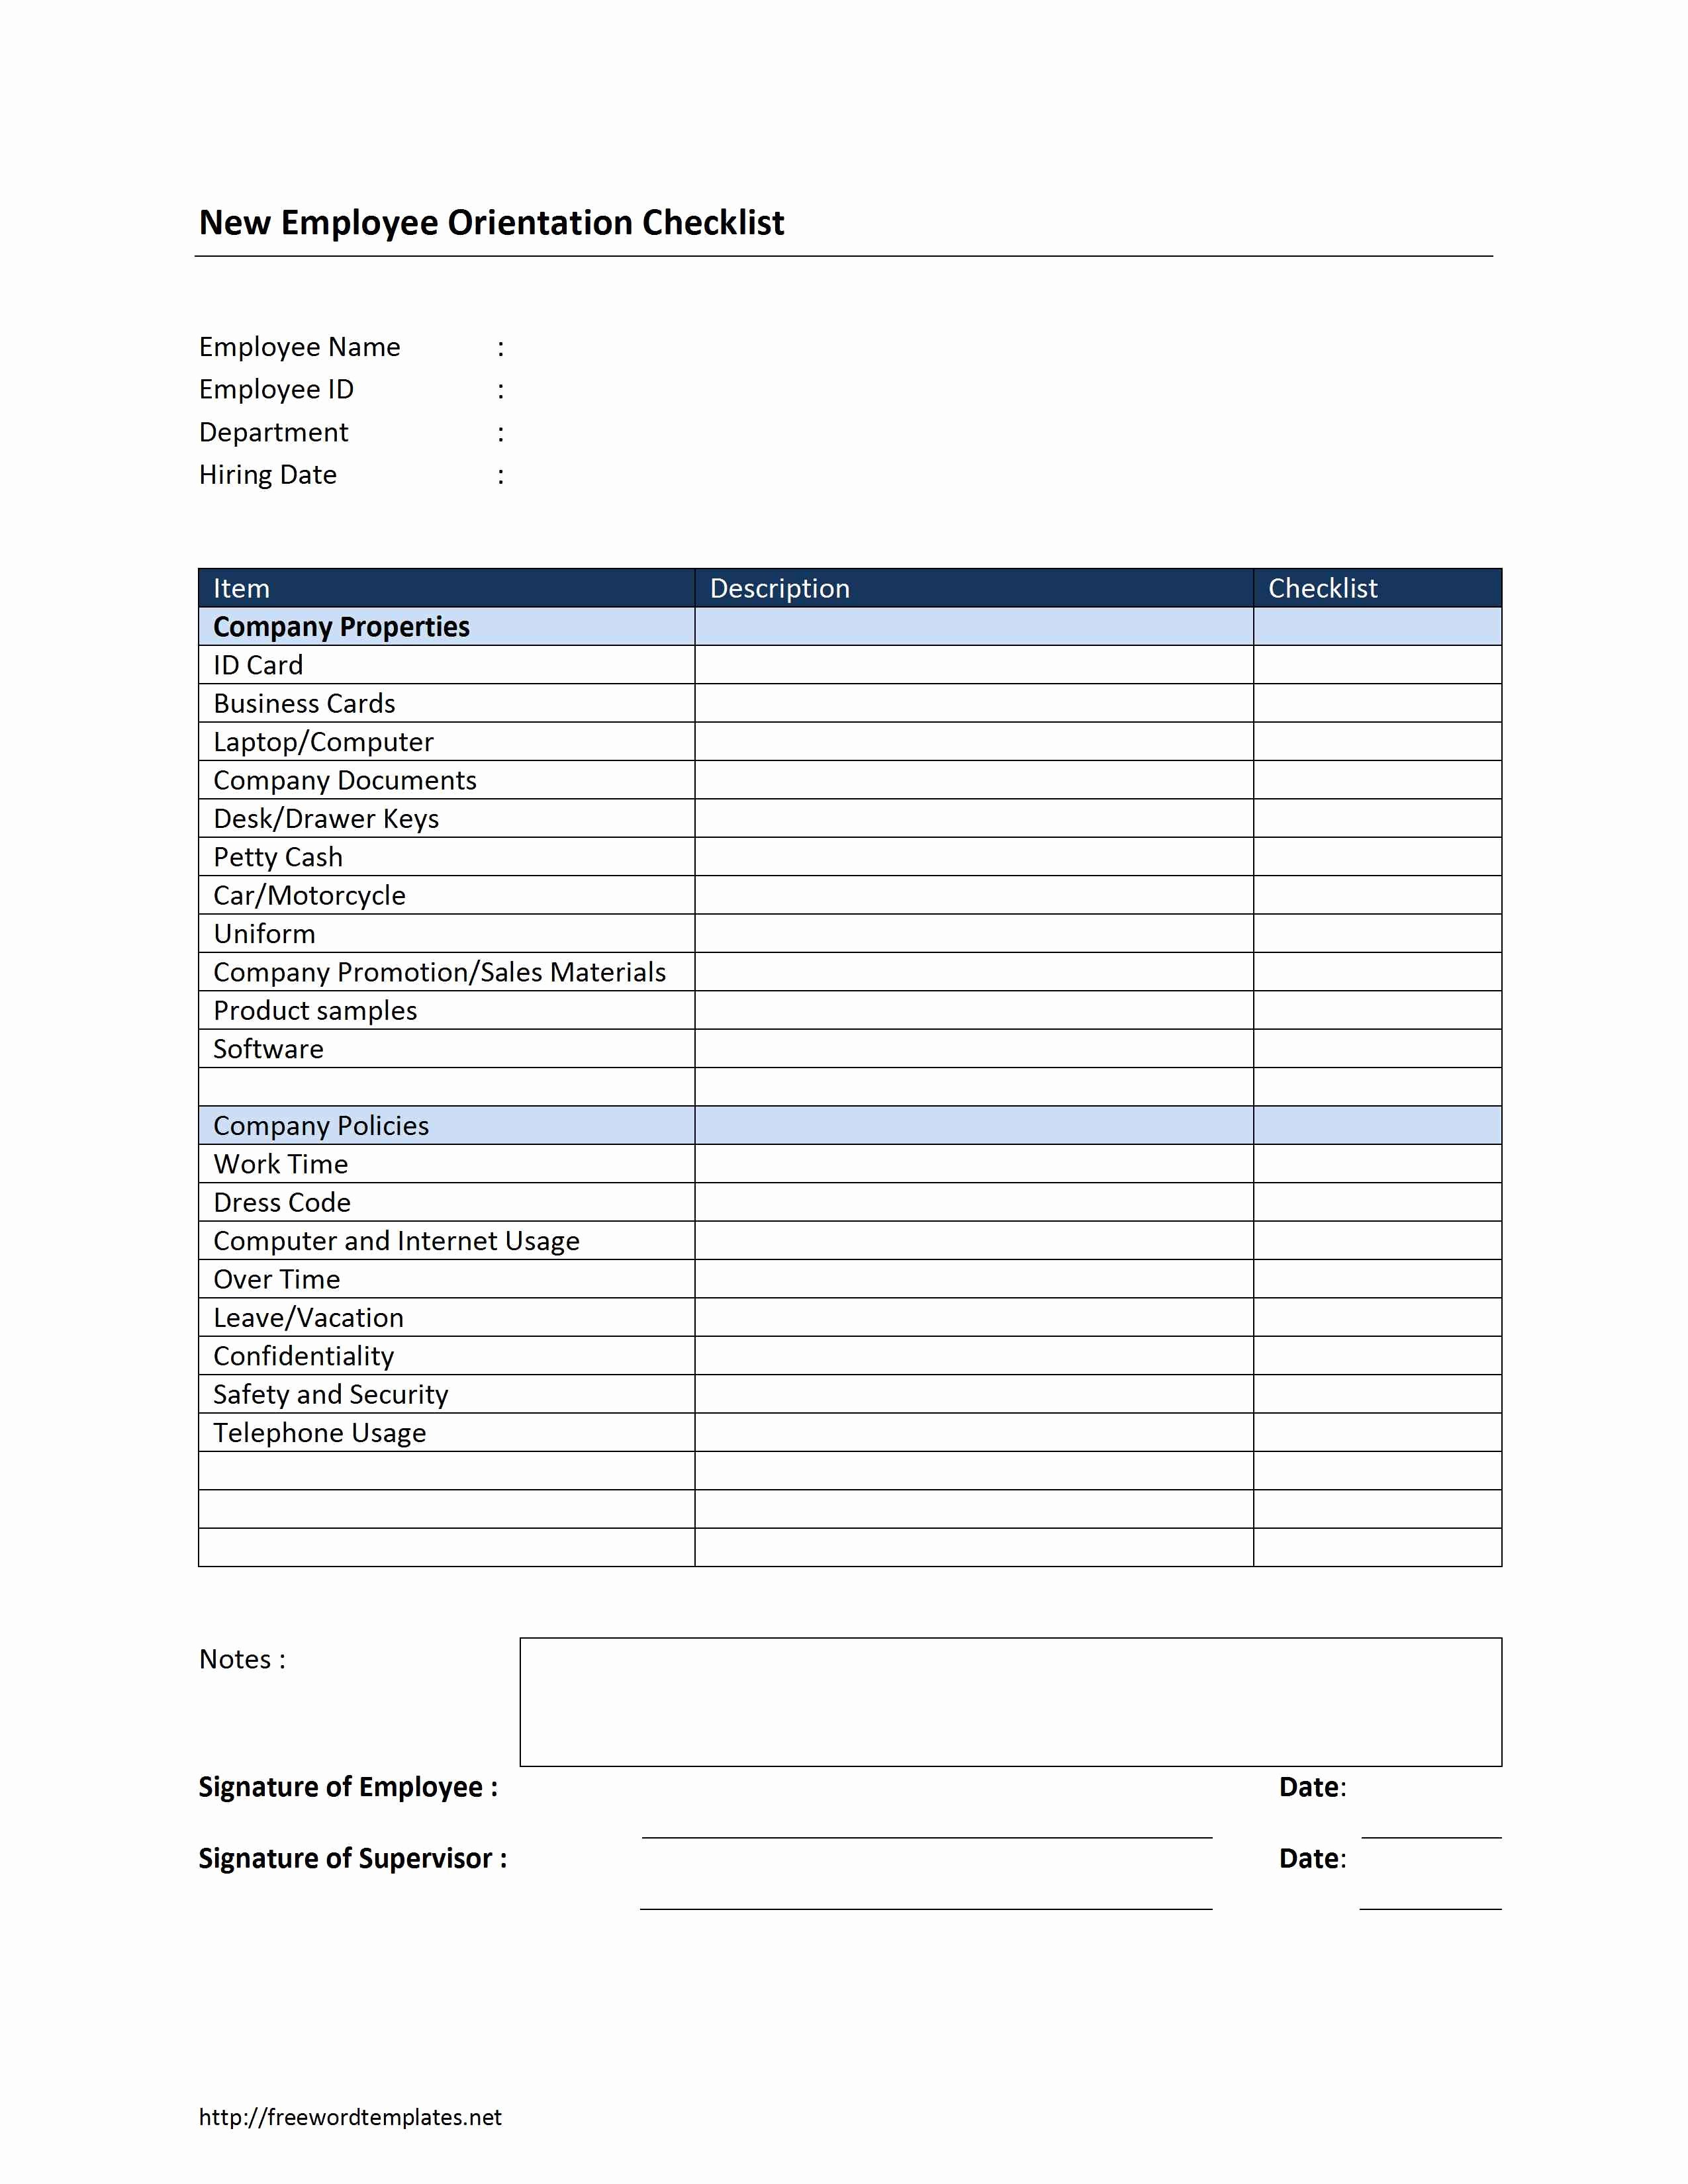 New Employee Checklist Template Excel Fresh New Employee orientation Checklist